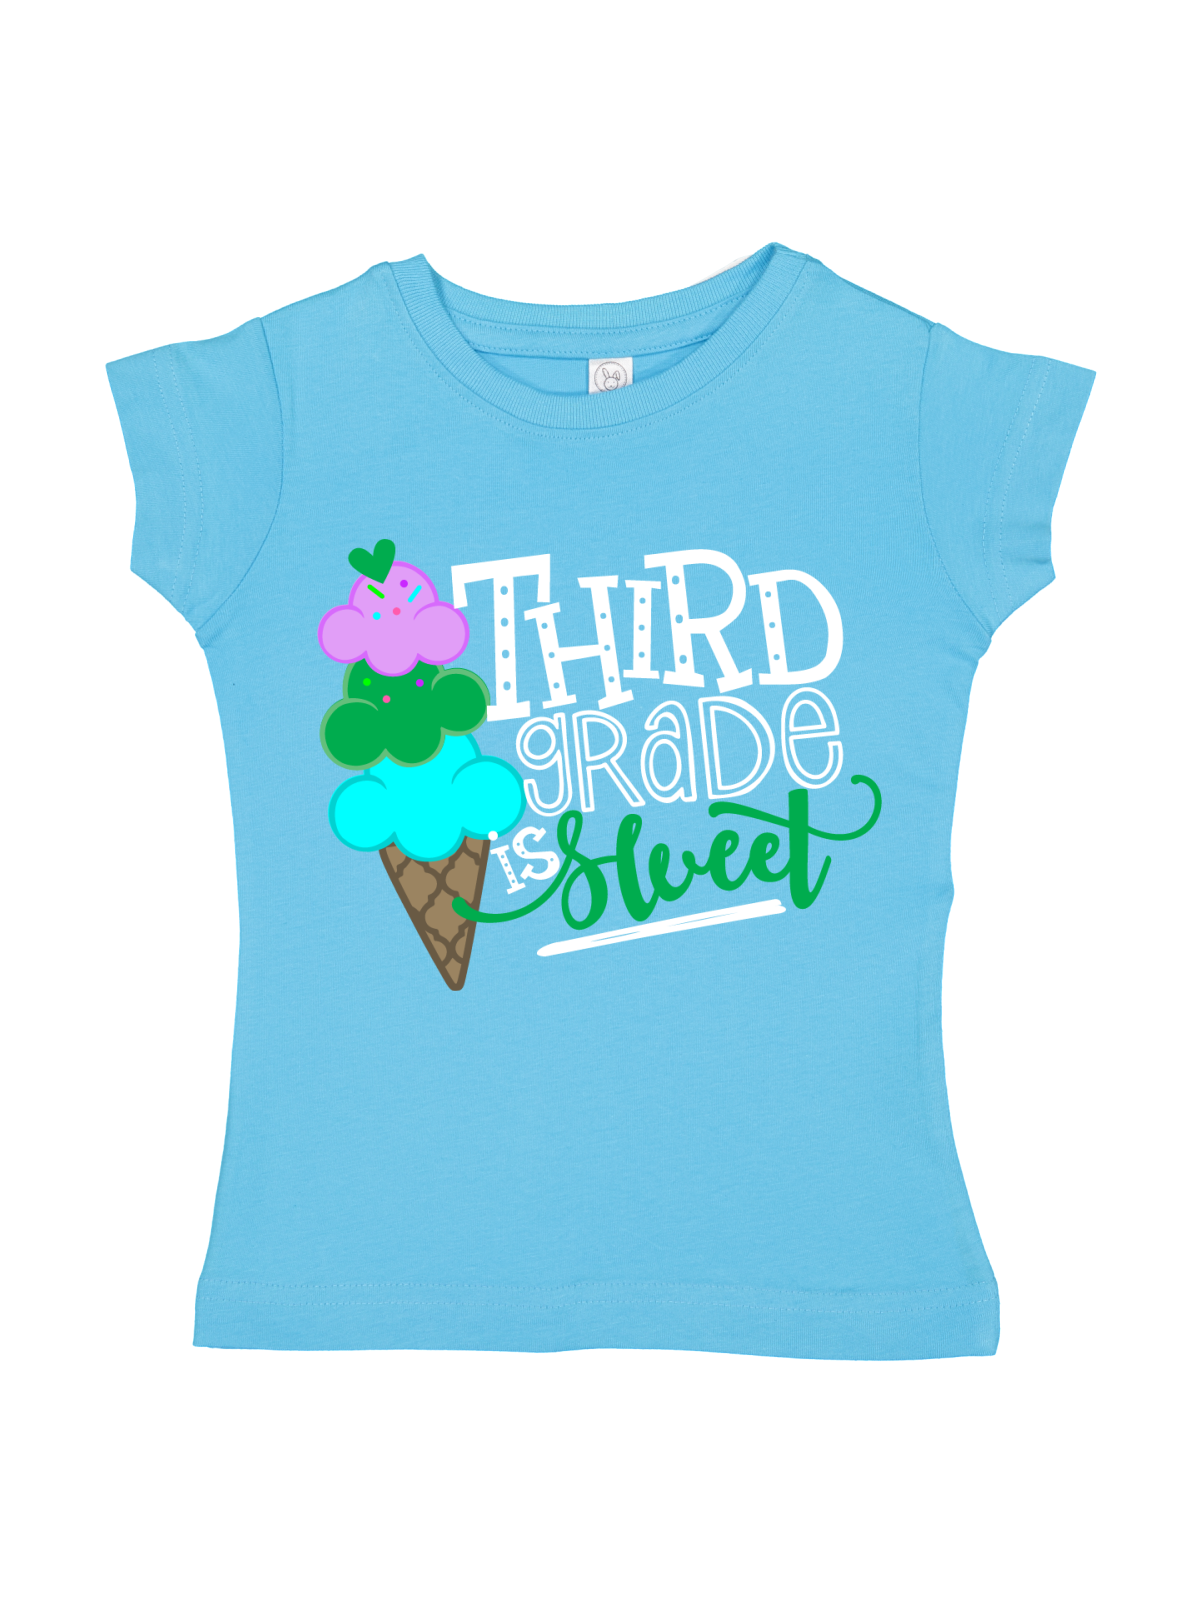 Third Grade is Sweet Girls Shirt in Blue